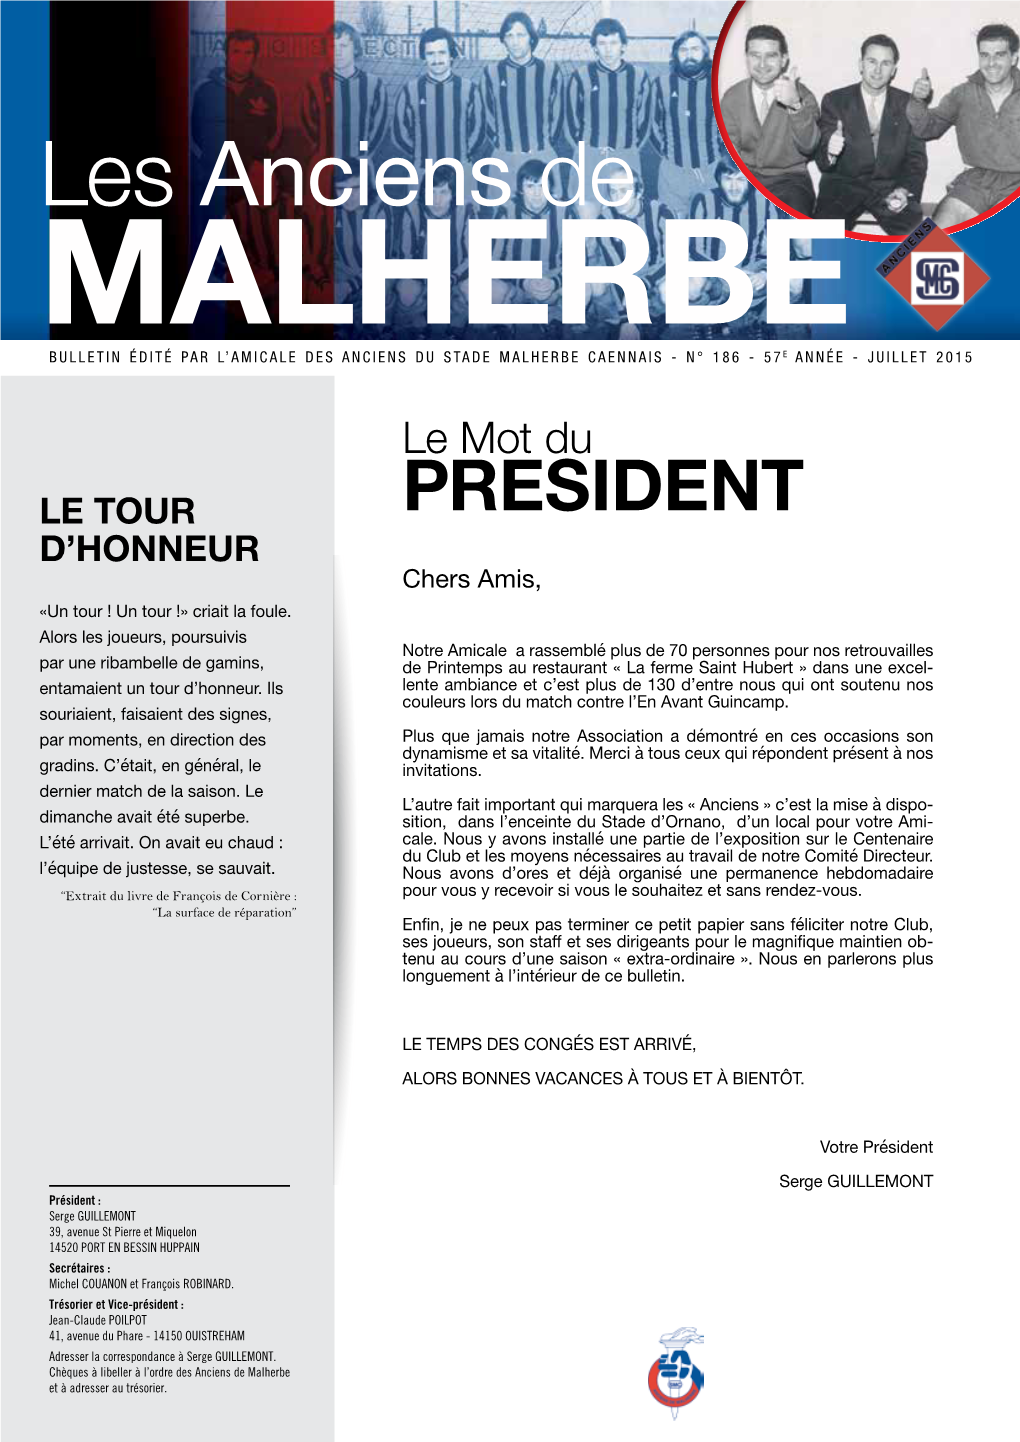 Les Anciens De Malherbe Bulletin Édité Par L’Amicale Des Anciens Du Stade Malherbe Caennais - N° 186 - 57E Année - Juillet 2015